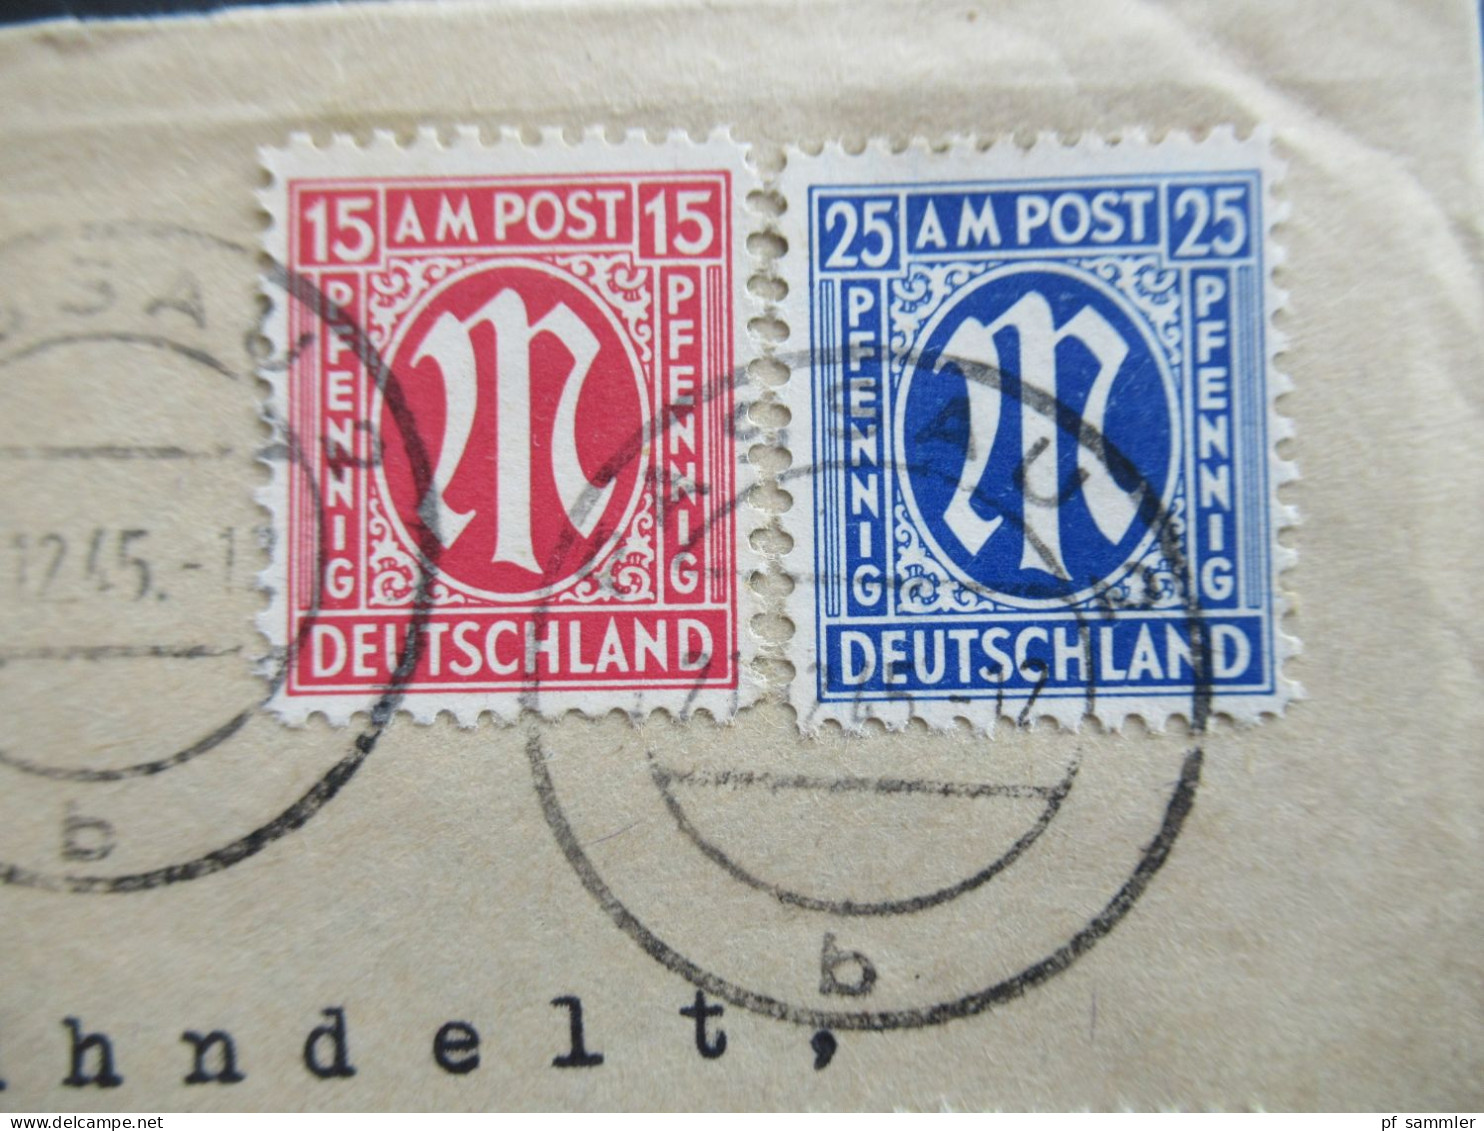 Am Post 21.12.1945 MiF Am. Druck / Deutscher Druck Nr.16 Unterrand Einschreiben Not R-Zettel Passau 2 - Osnabrück - Storia Postale